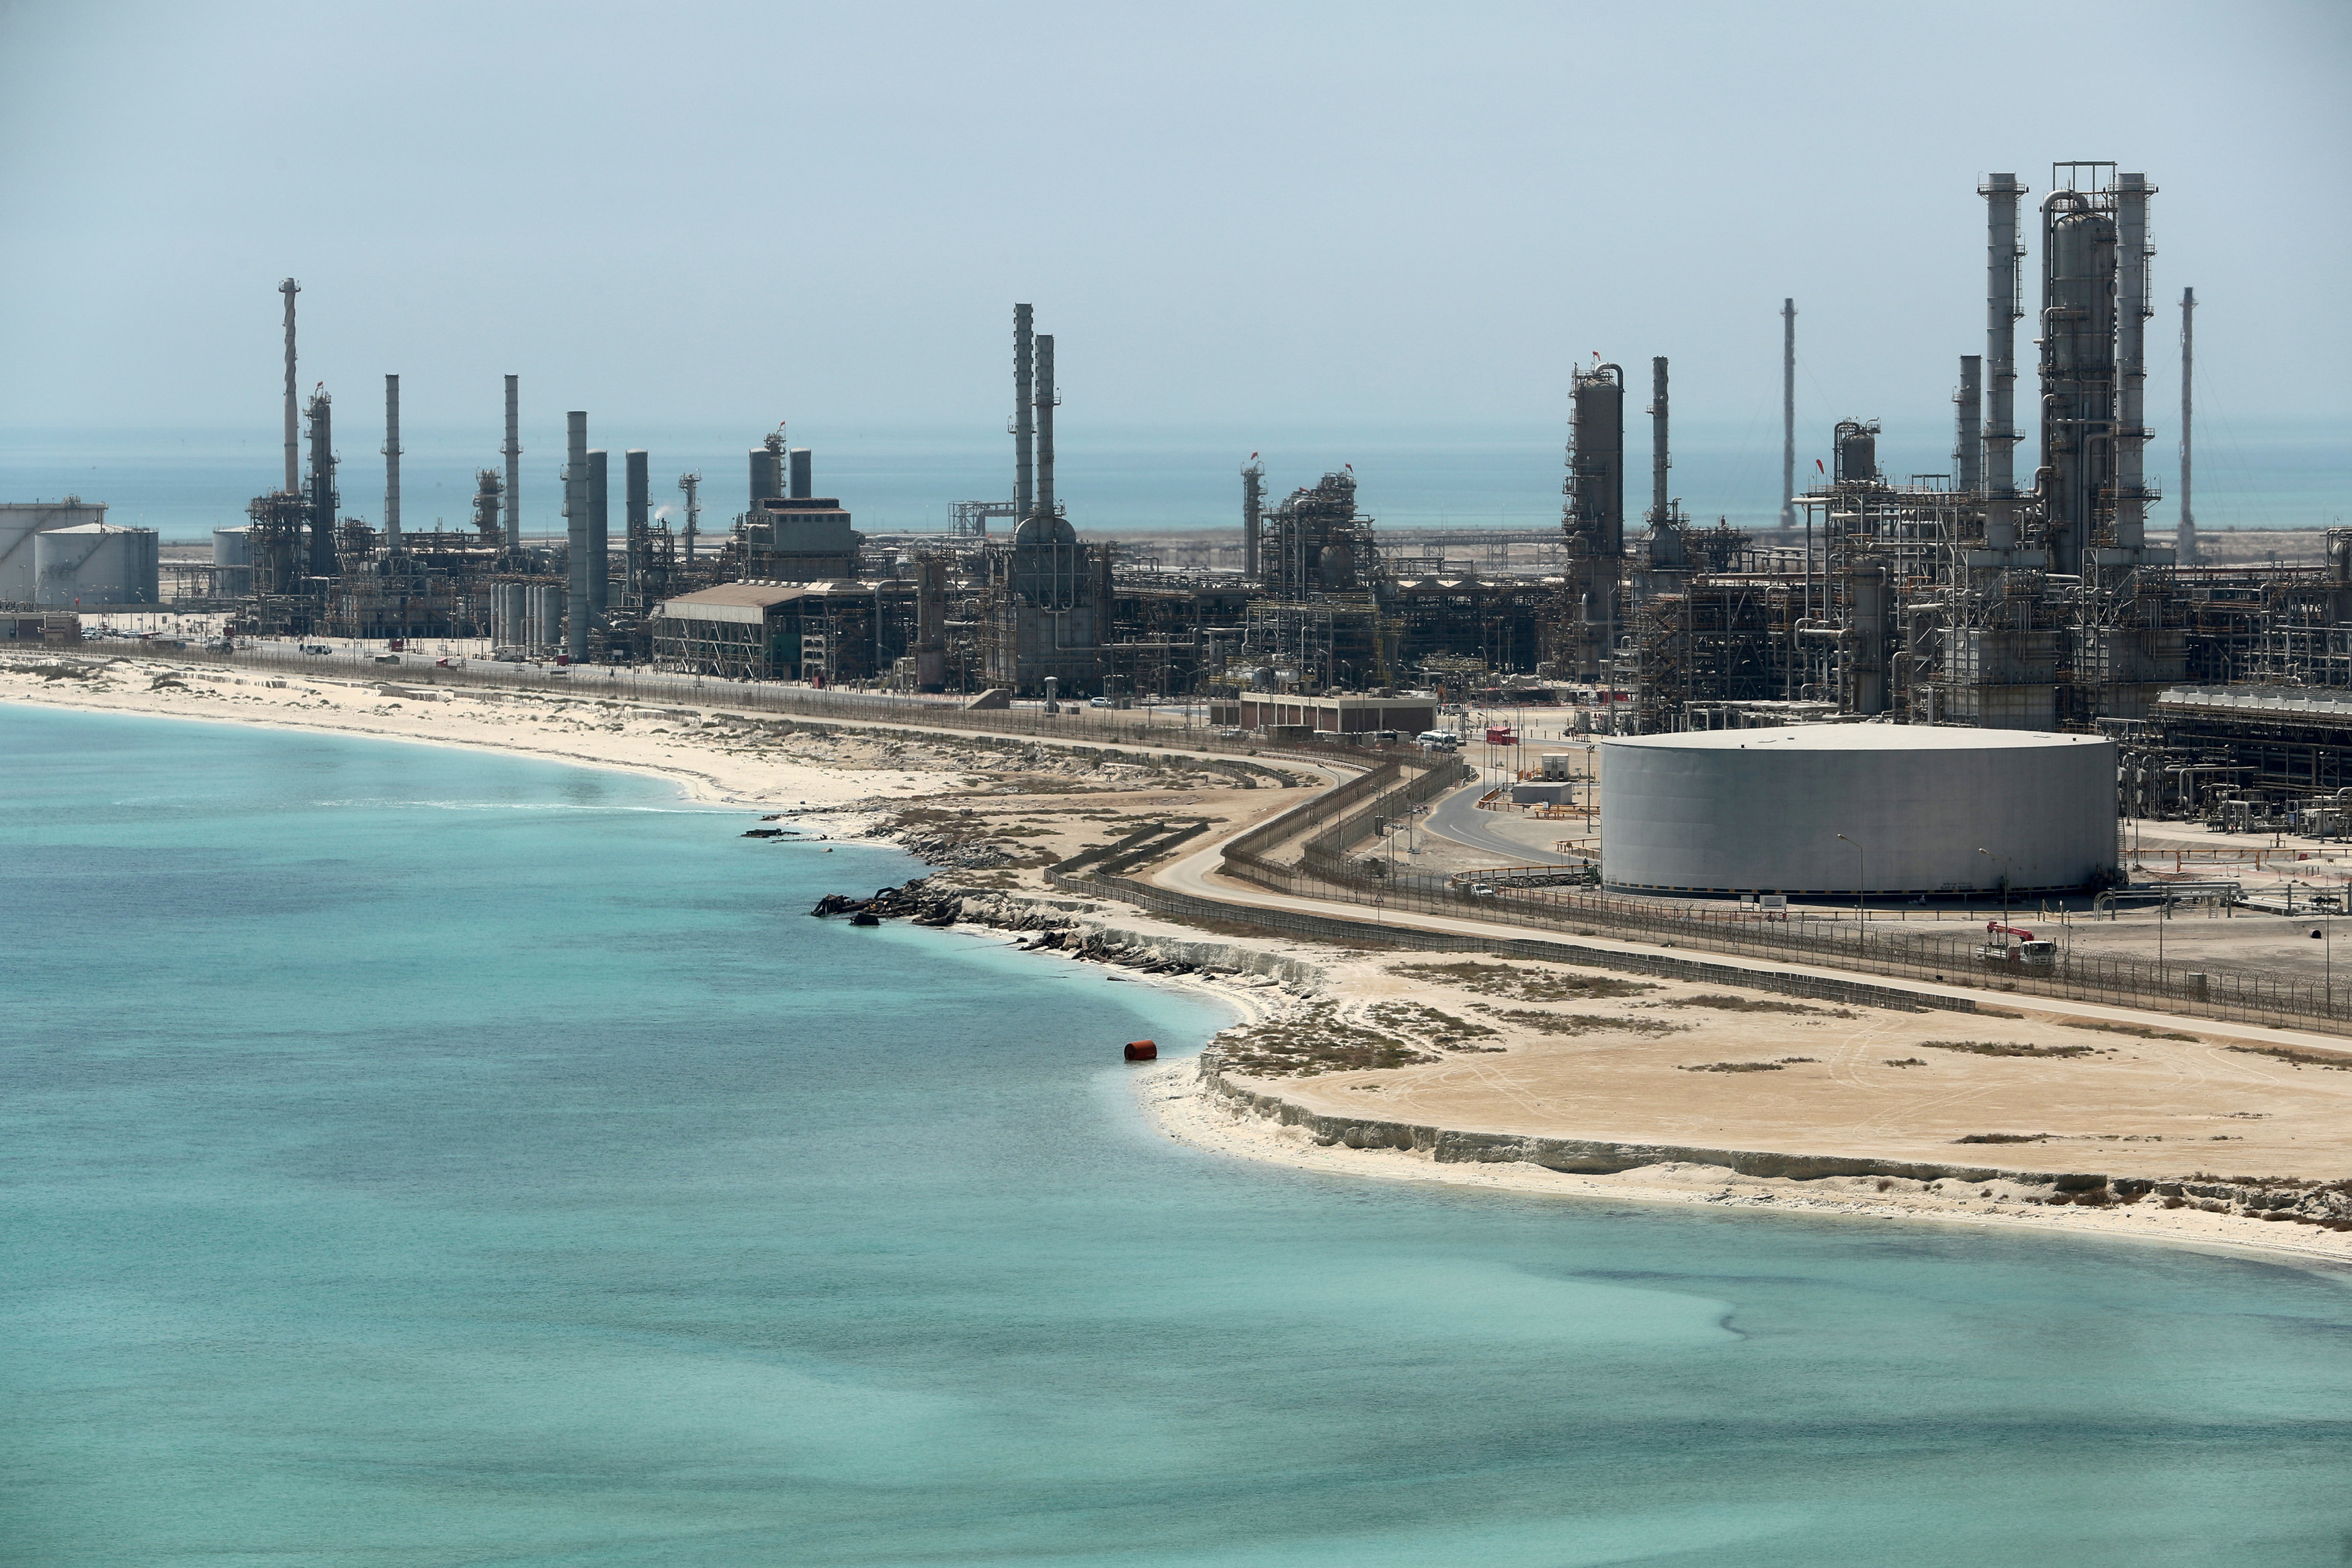 Saudi Arabia pumped less crude oil in July